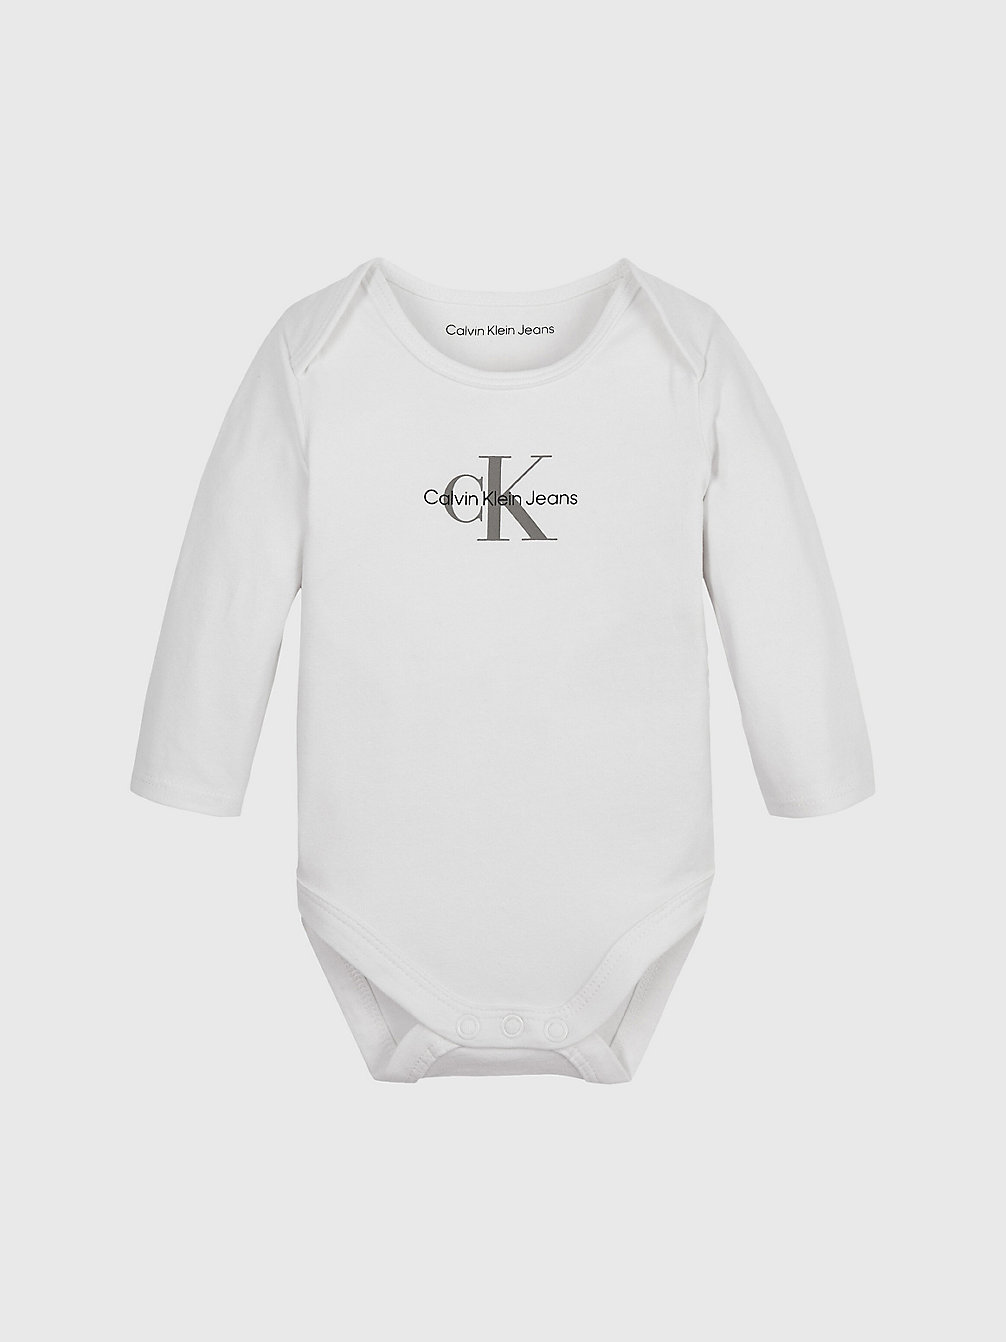 BRIGHT WHITE Logo-Baby-Body undefined newborn Calvin Klein